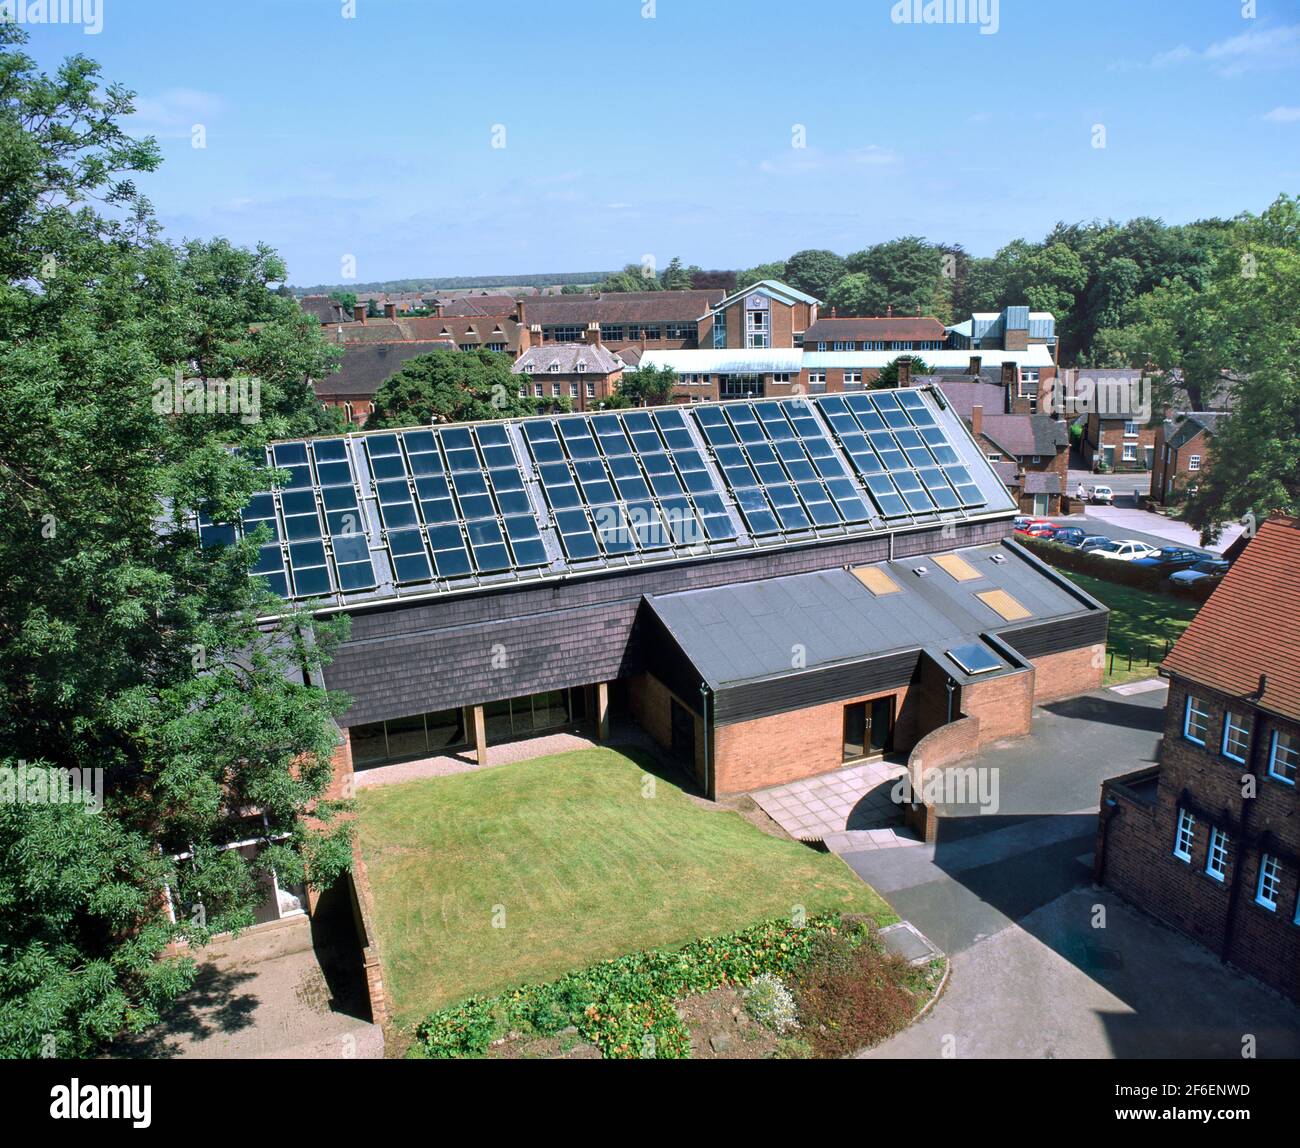 Eine Reihe von auf dem Dach montierten Sonnenkollektoren zum Erhitzen von Wasser für einen Swimmingpool im darunter liegenden Gebäude. Abbot's Bromley School, Staffordshire. Stockfoto